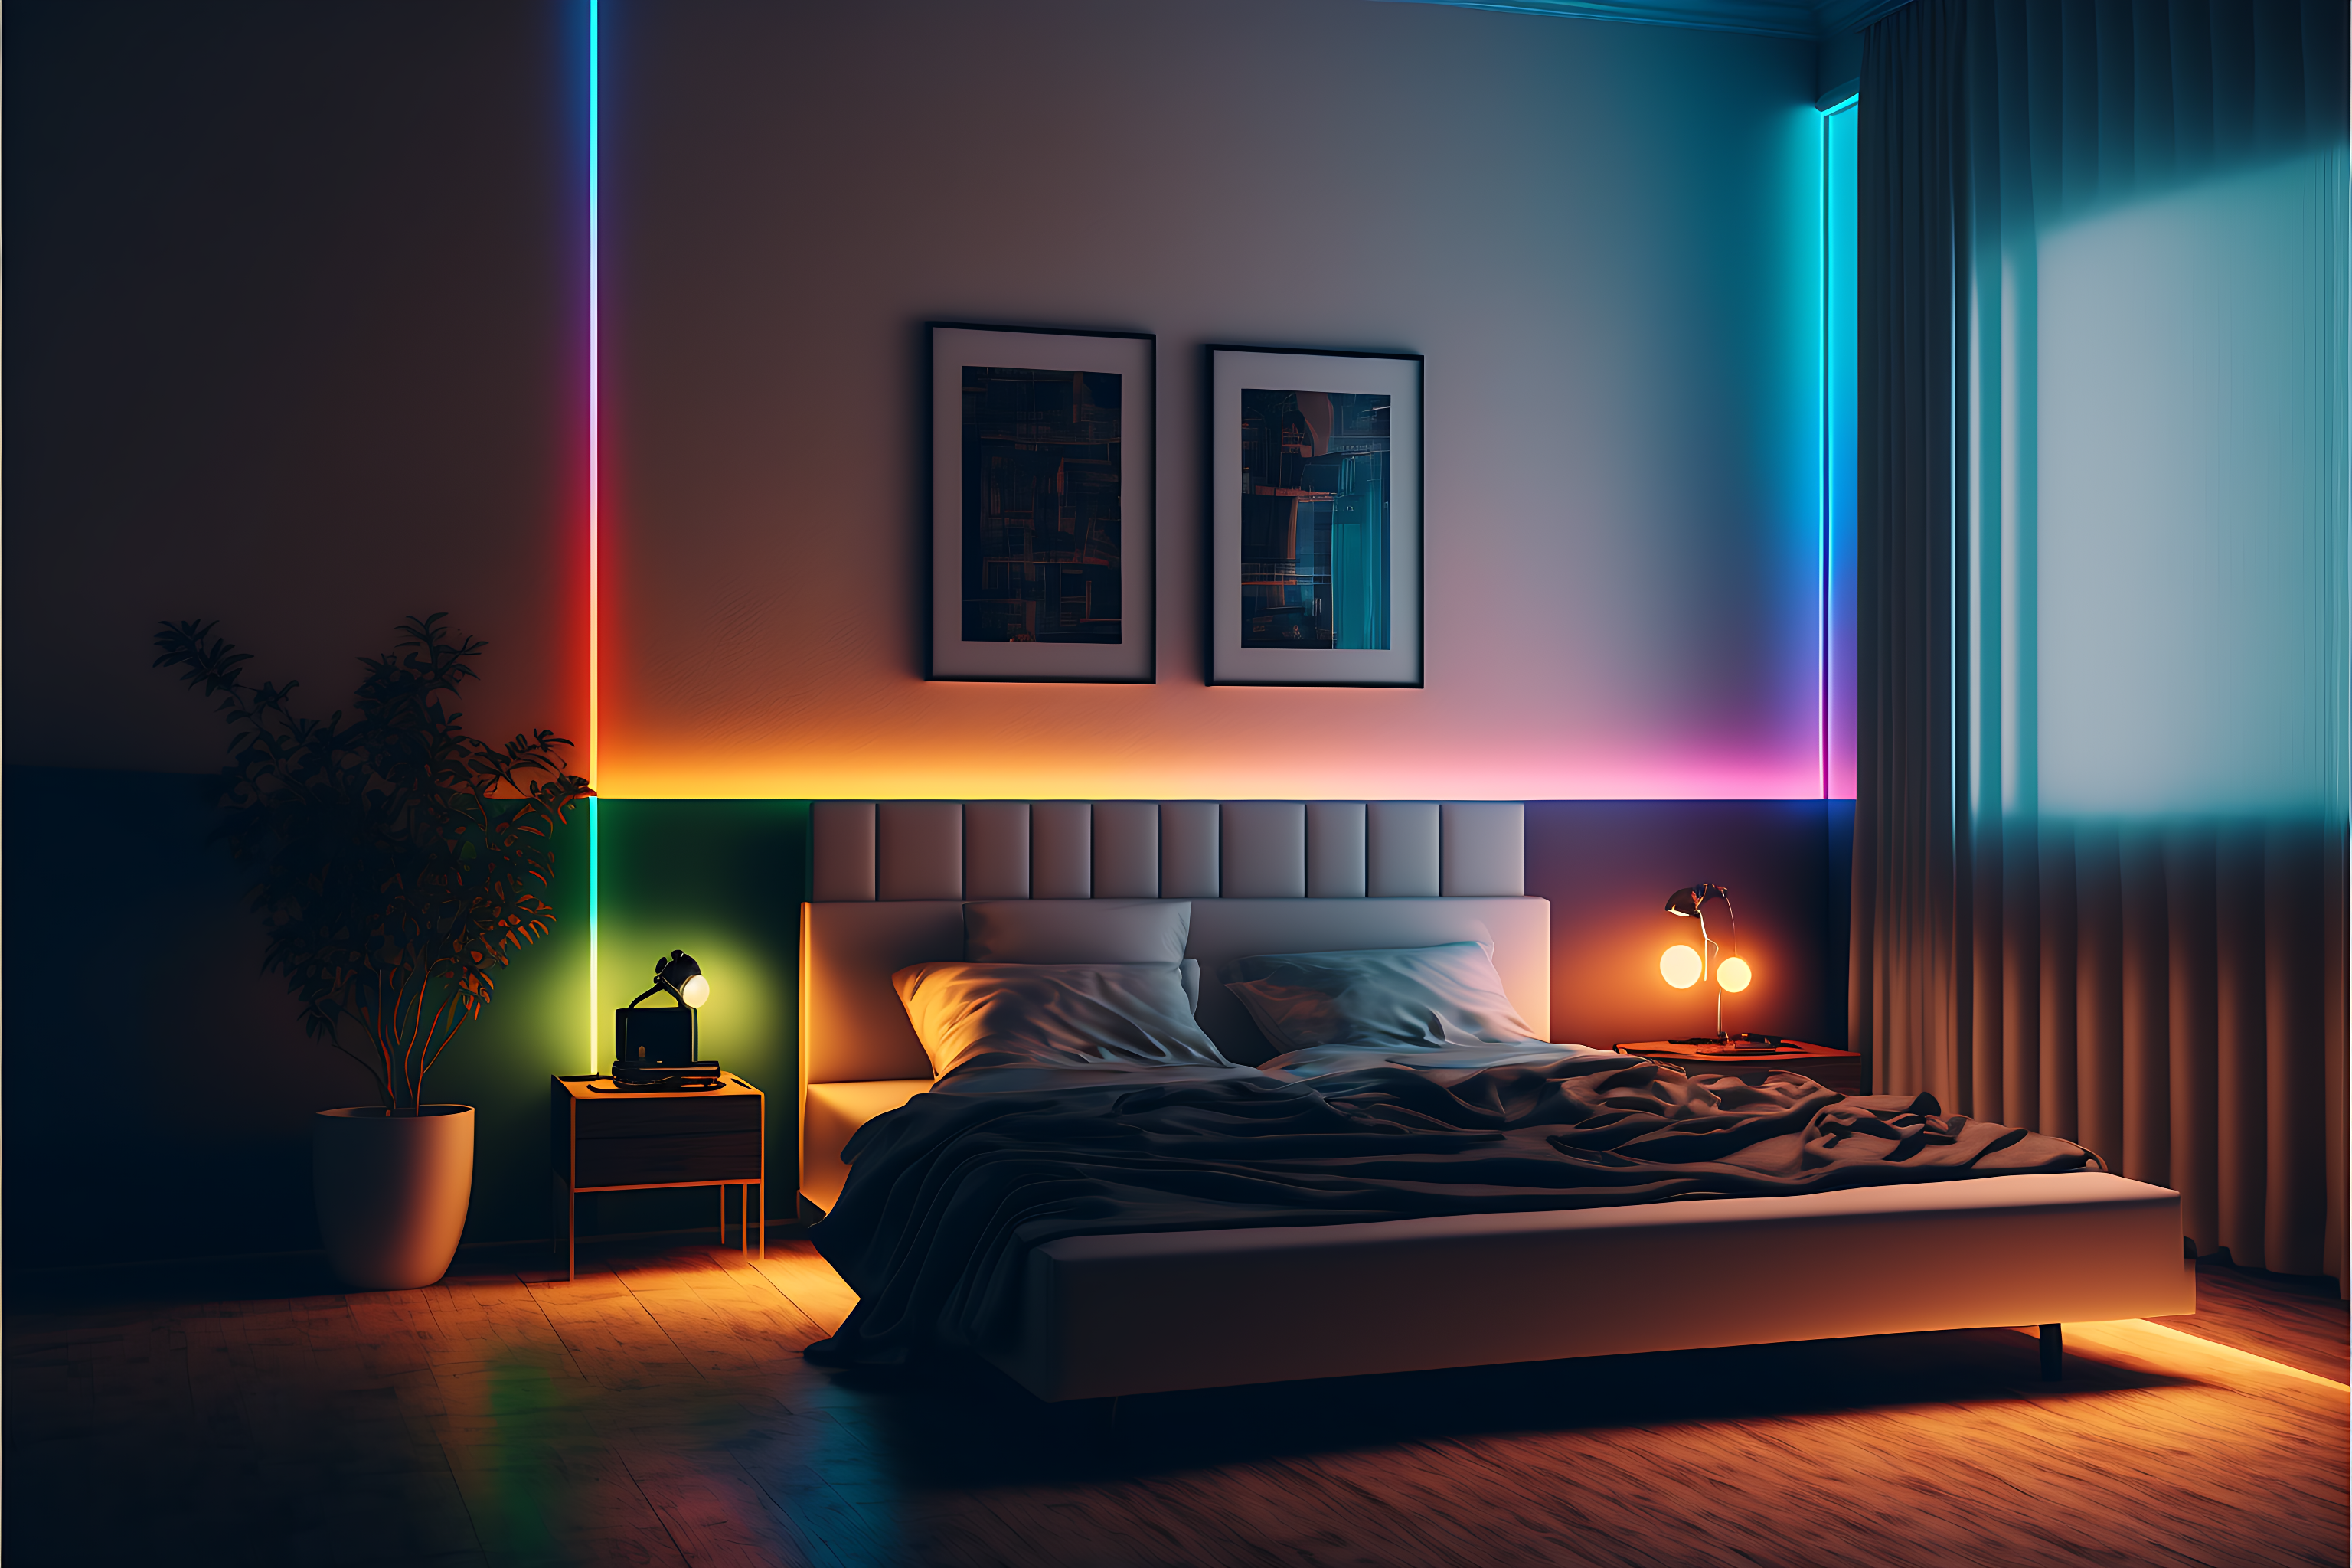 Leds chambre - Le spécialiste de la LED chambre